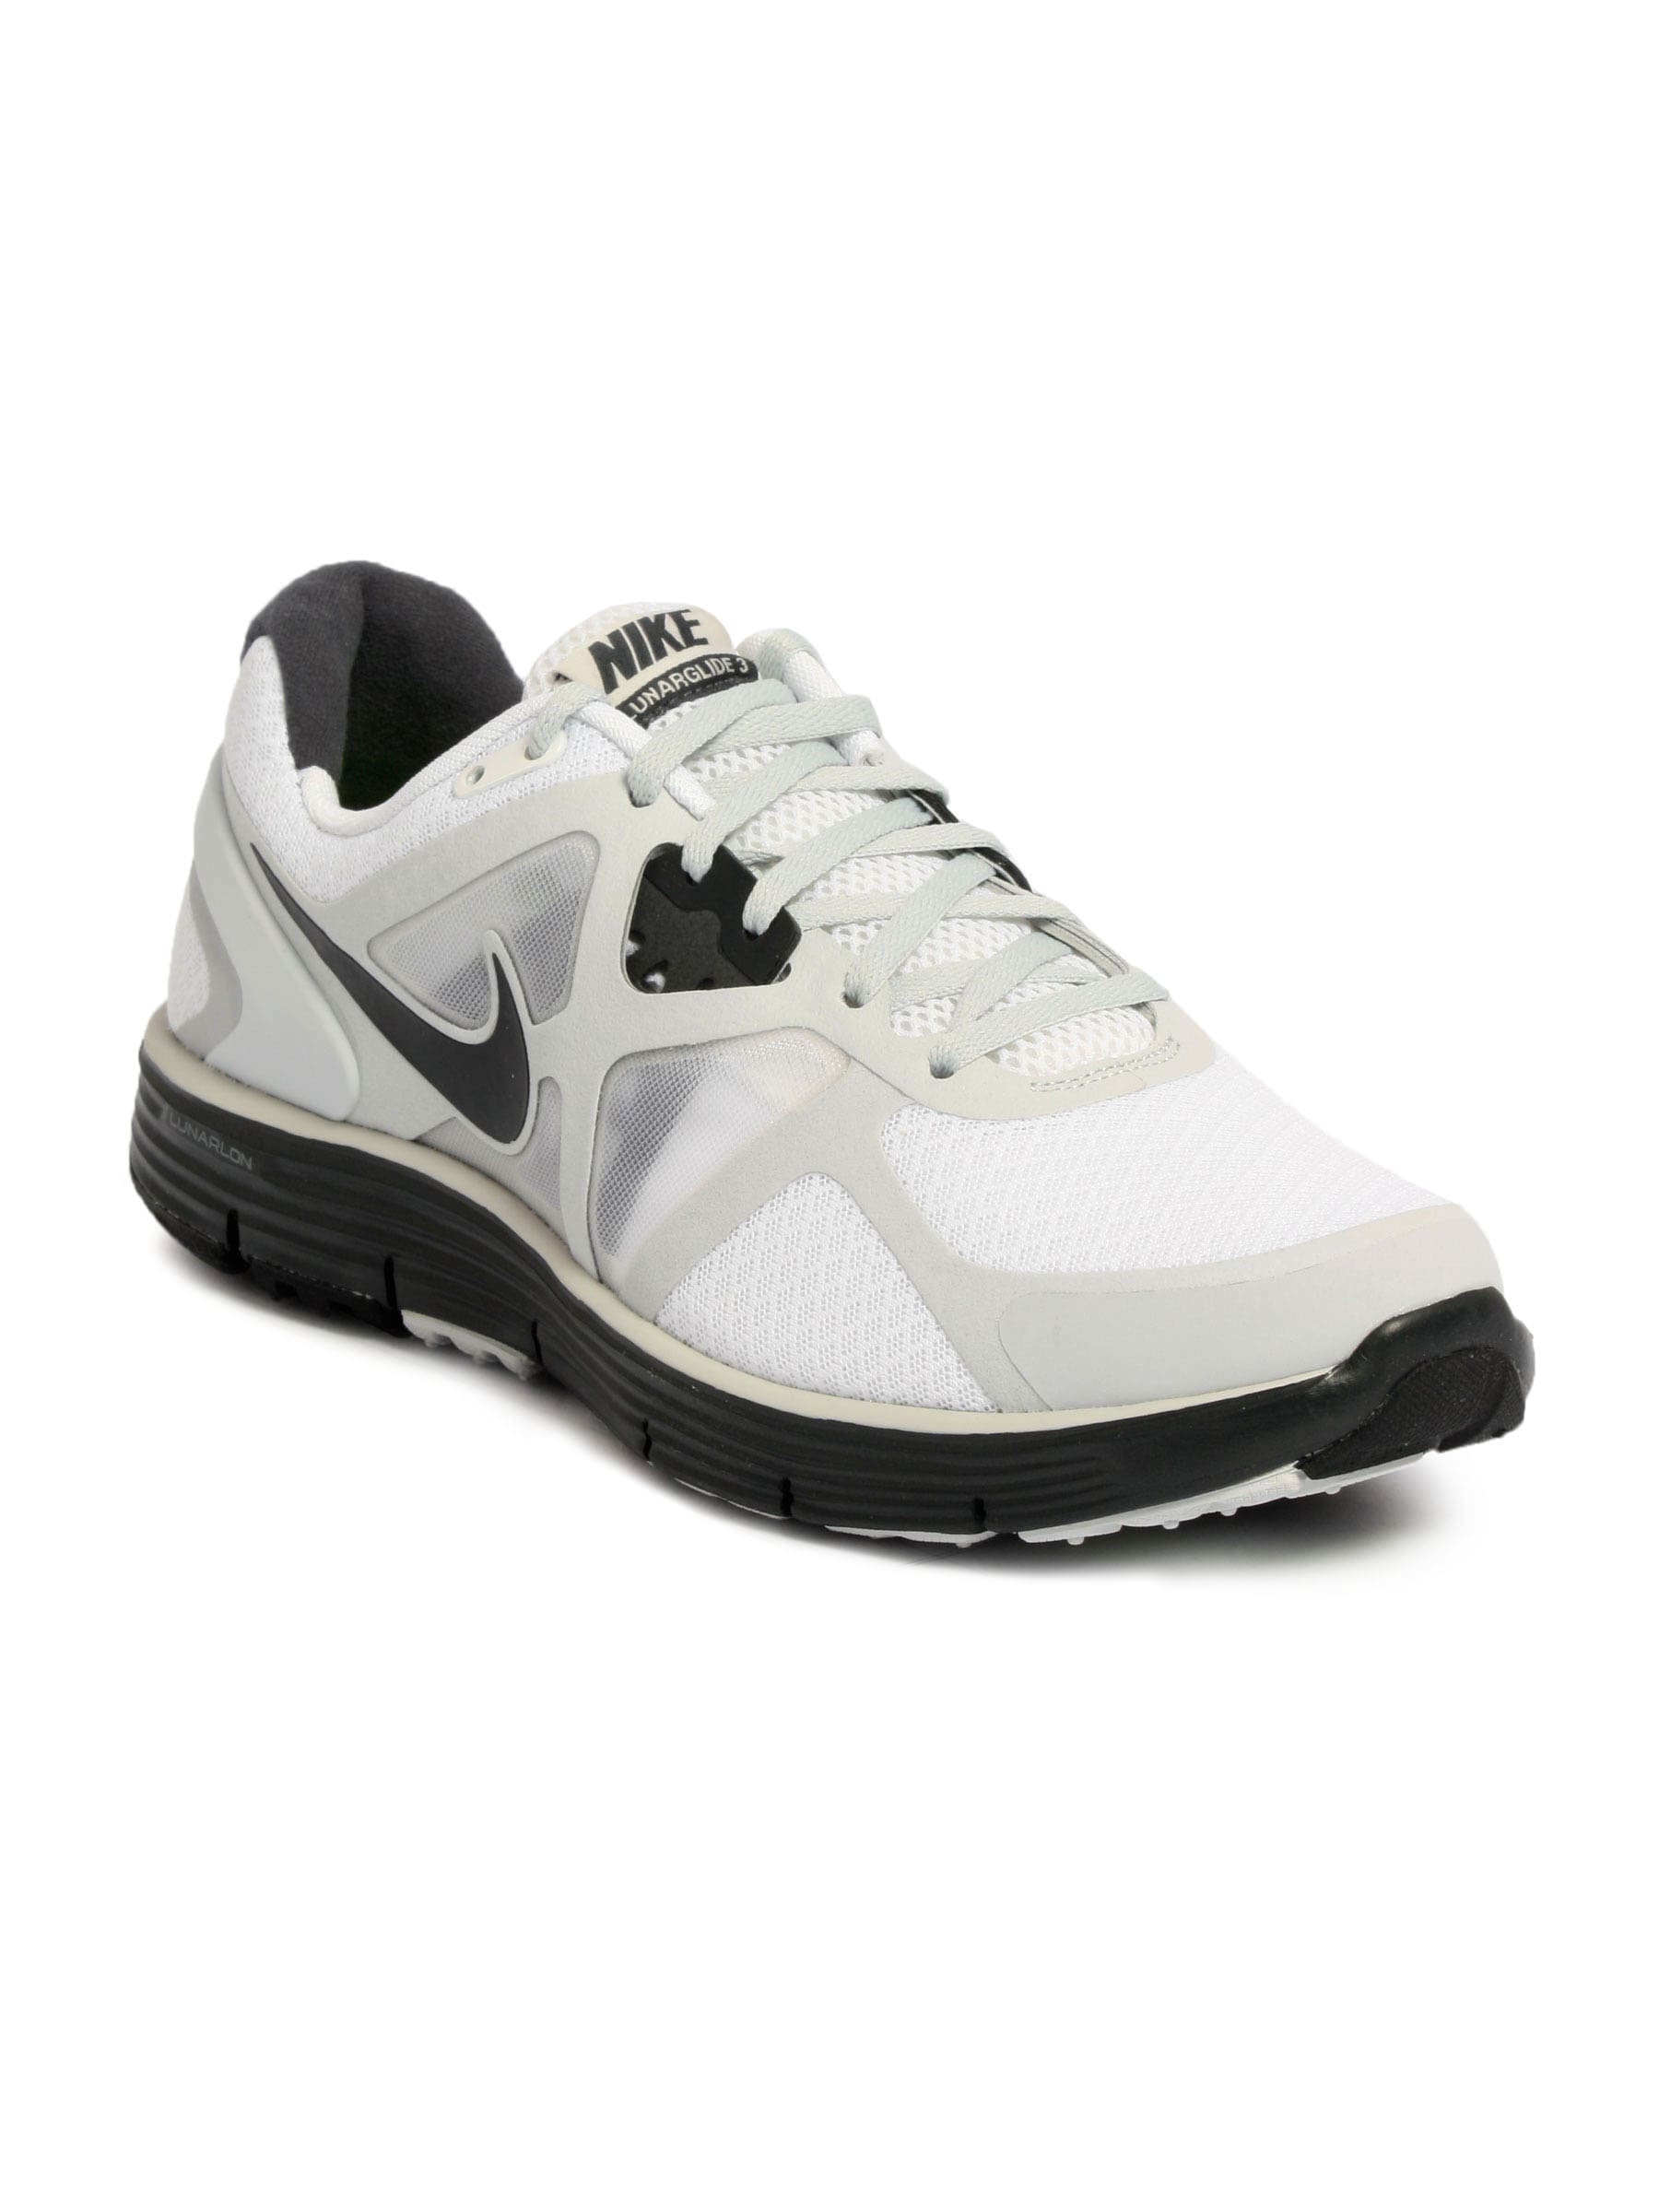 Nike Men Lunarglide +3 White Sports Shoes